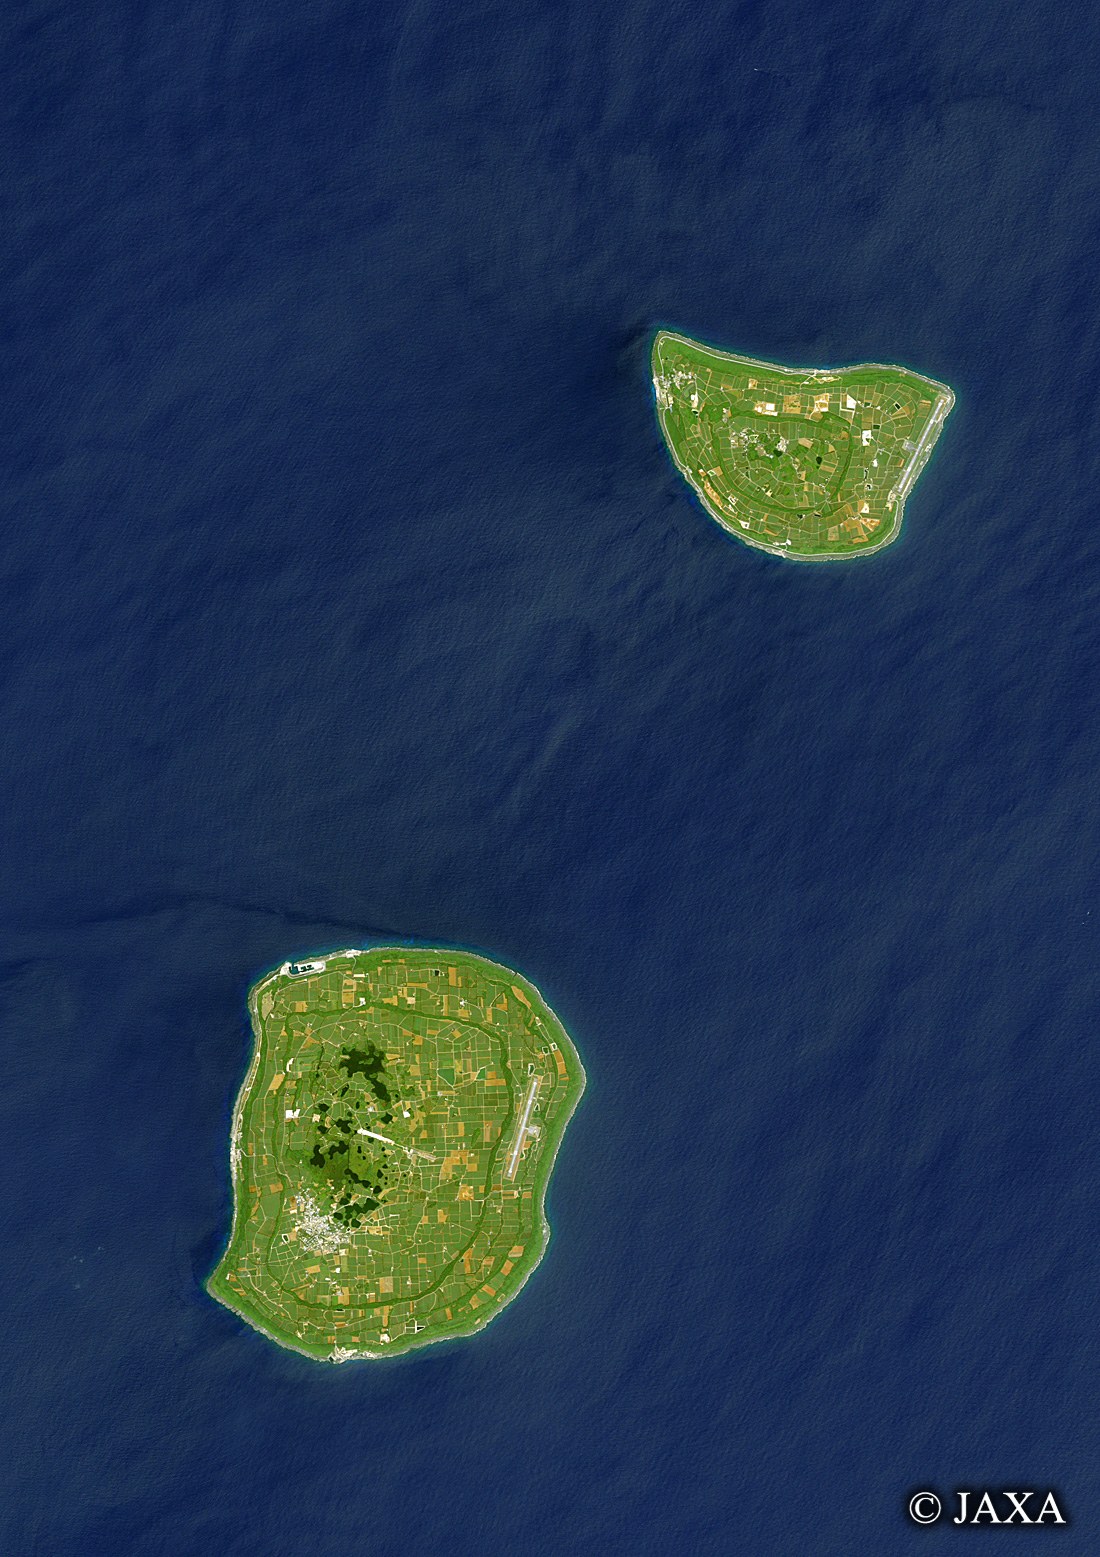 だいちから見た日本の都市 北大東島・南大東島:衛星画像